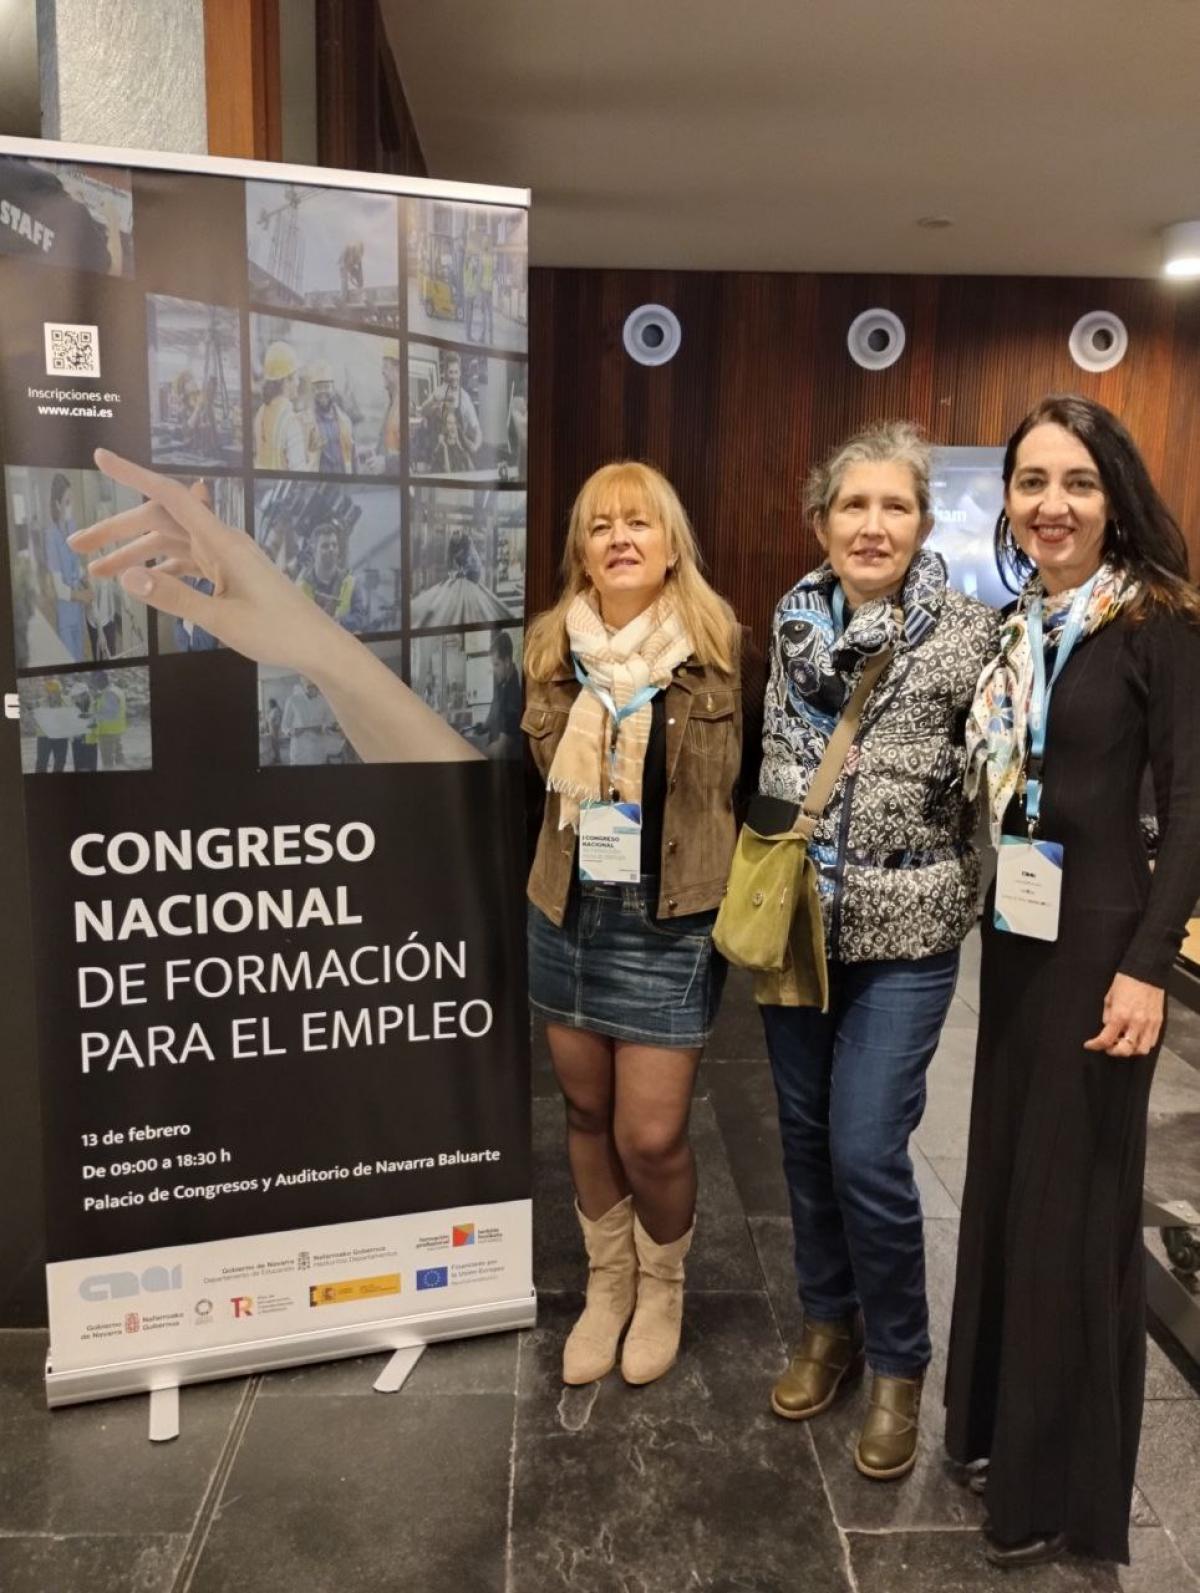 Nuestra representacin en el primer Congreso Nacional de Formacin para el Empleo celebrado en el Palacio de Congresos y Auditorio de Navarra Baluarte